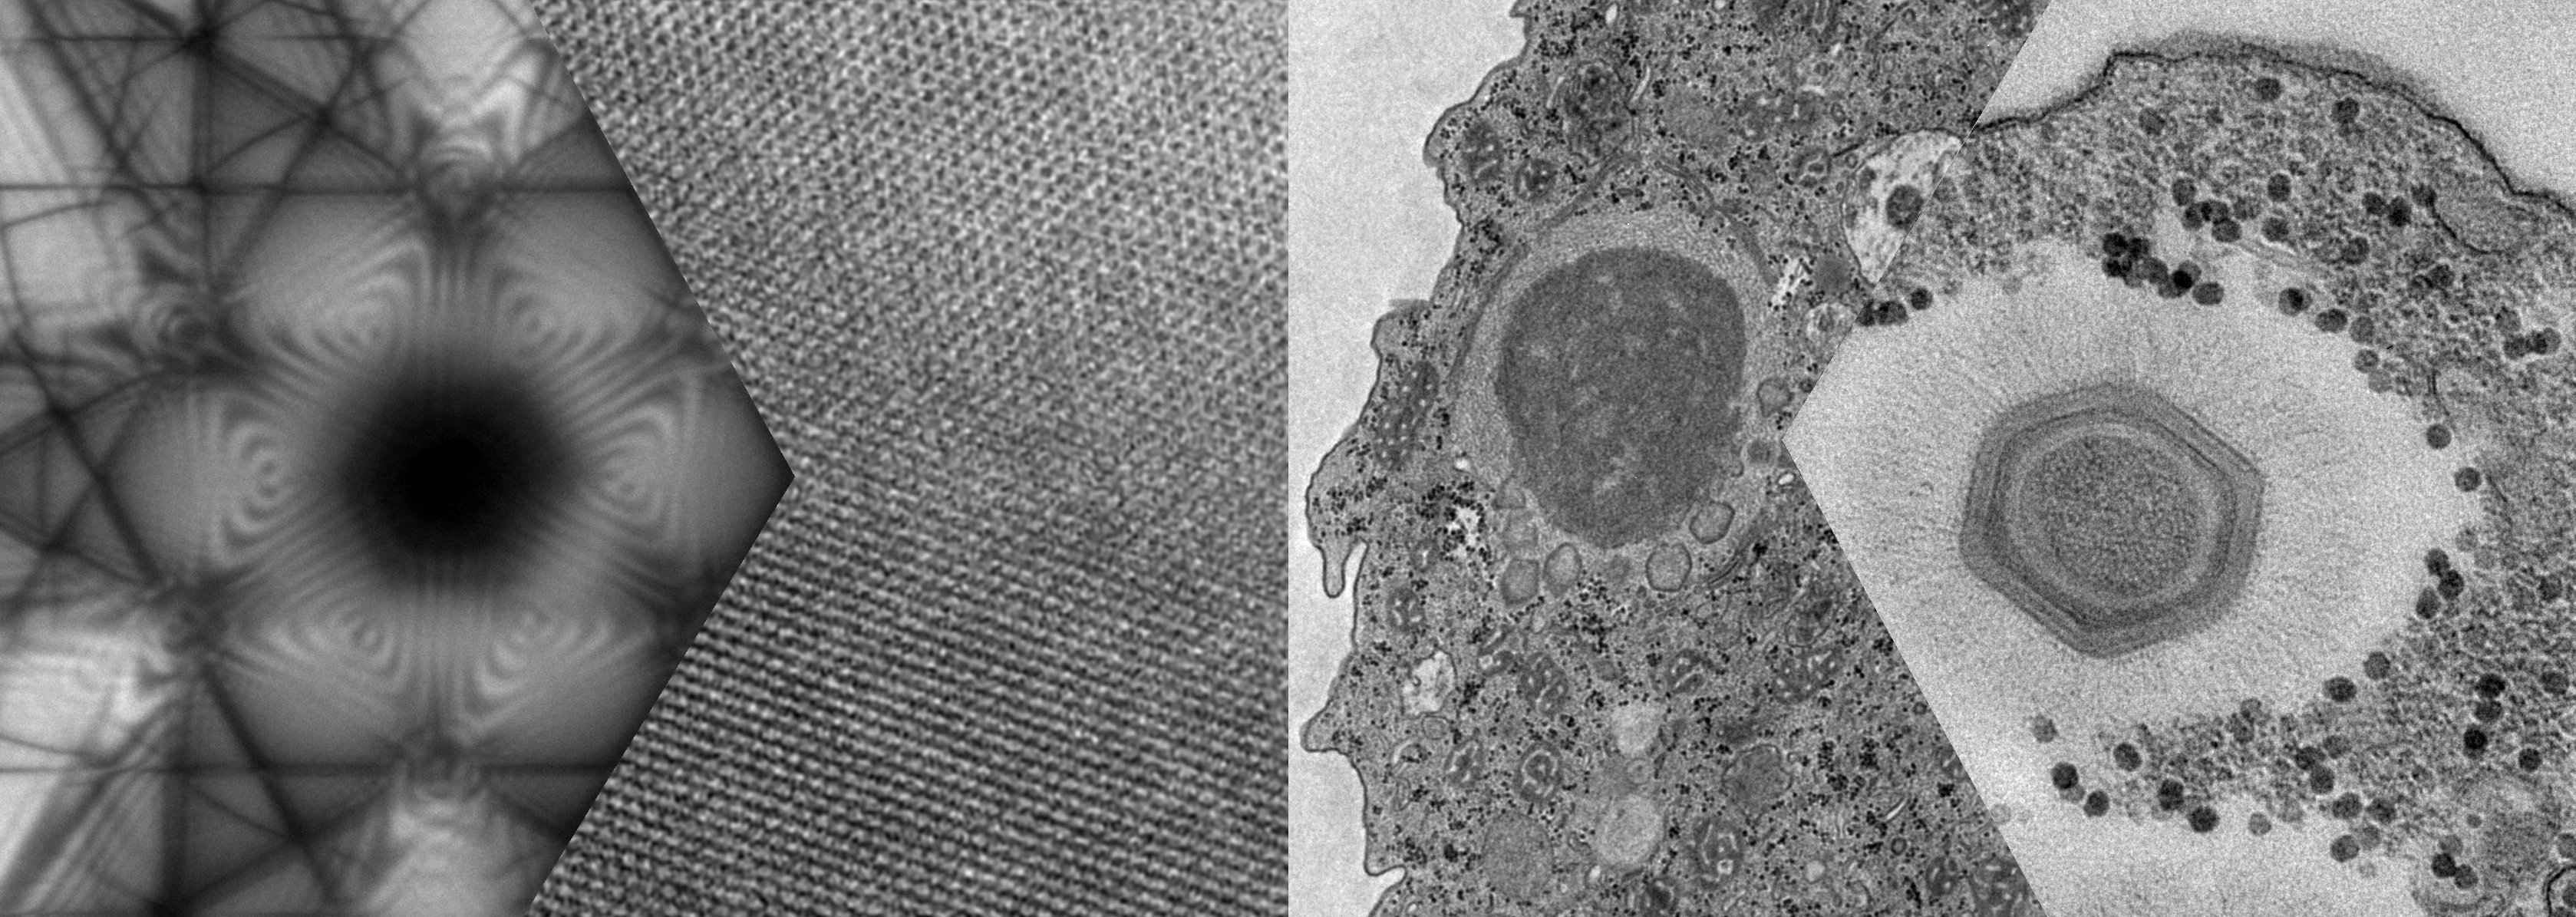 Imagens obtidas com o microscópio eletrônico de transmissão FEI Tecnai G2-20 SuperTwin (200kV)